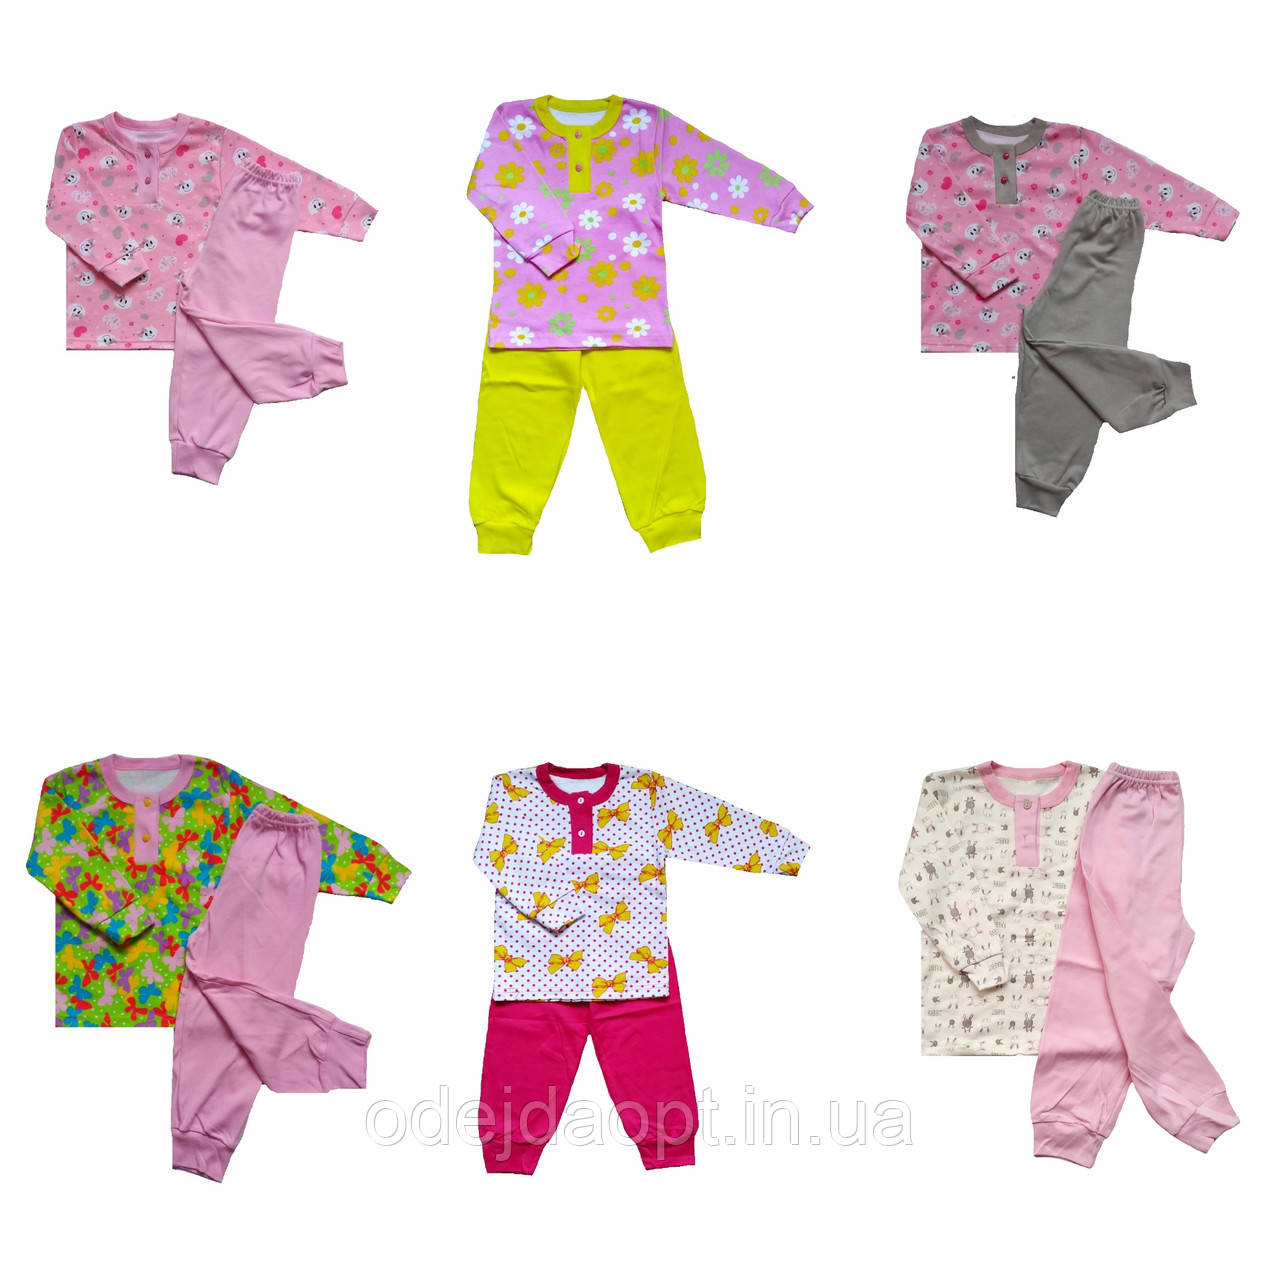 Дитяча піжама з манжетами для дівчинки 1,2,3,4,5,6,7,8 років, фото 1